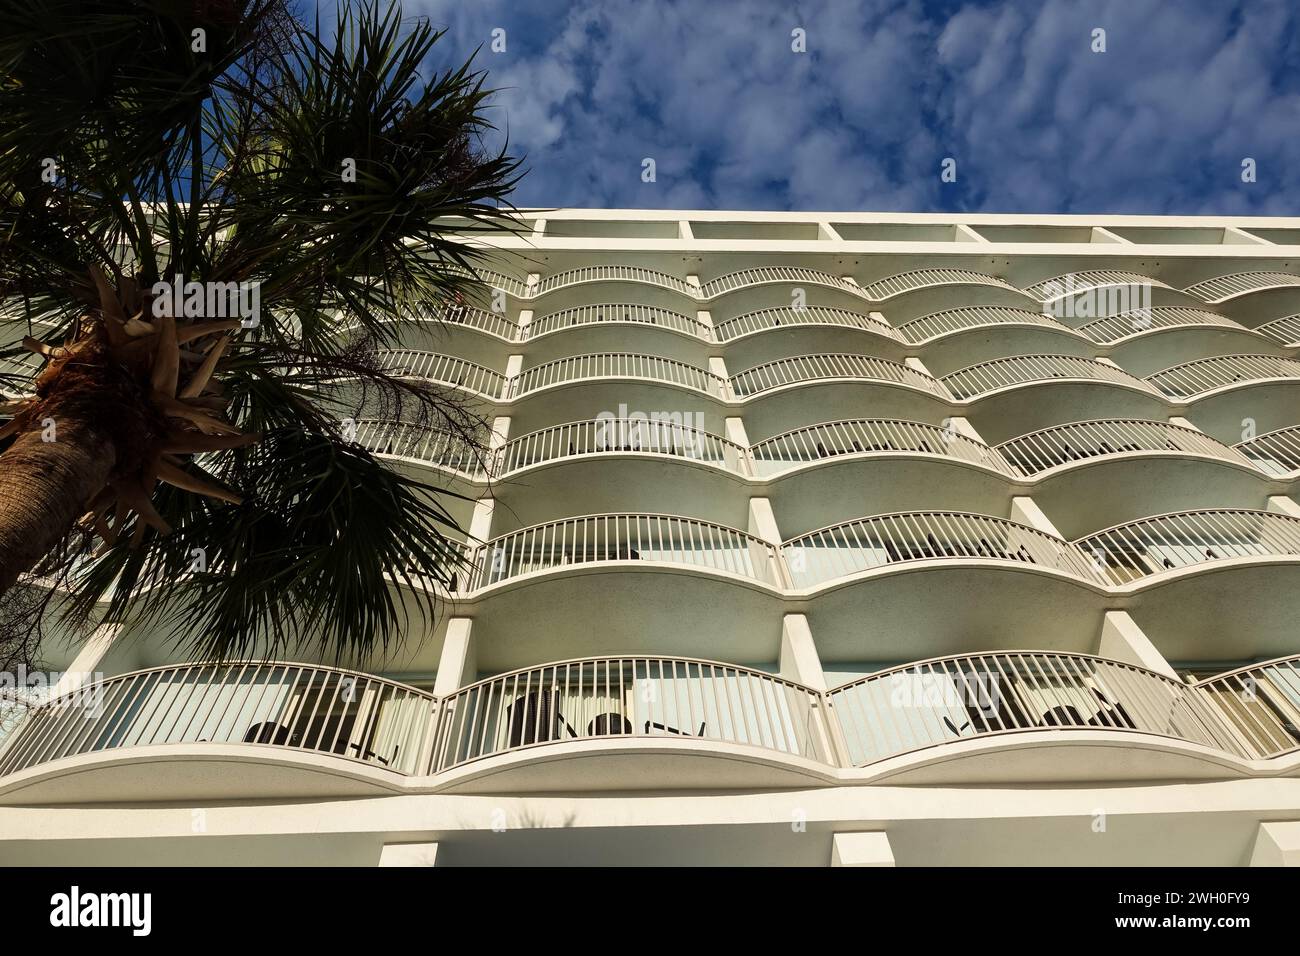 Hôtel blanc symétrique avec balcons, entouré de palmiers sous un ciel bleu ensoleillé Banque D'Images